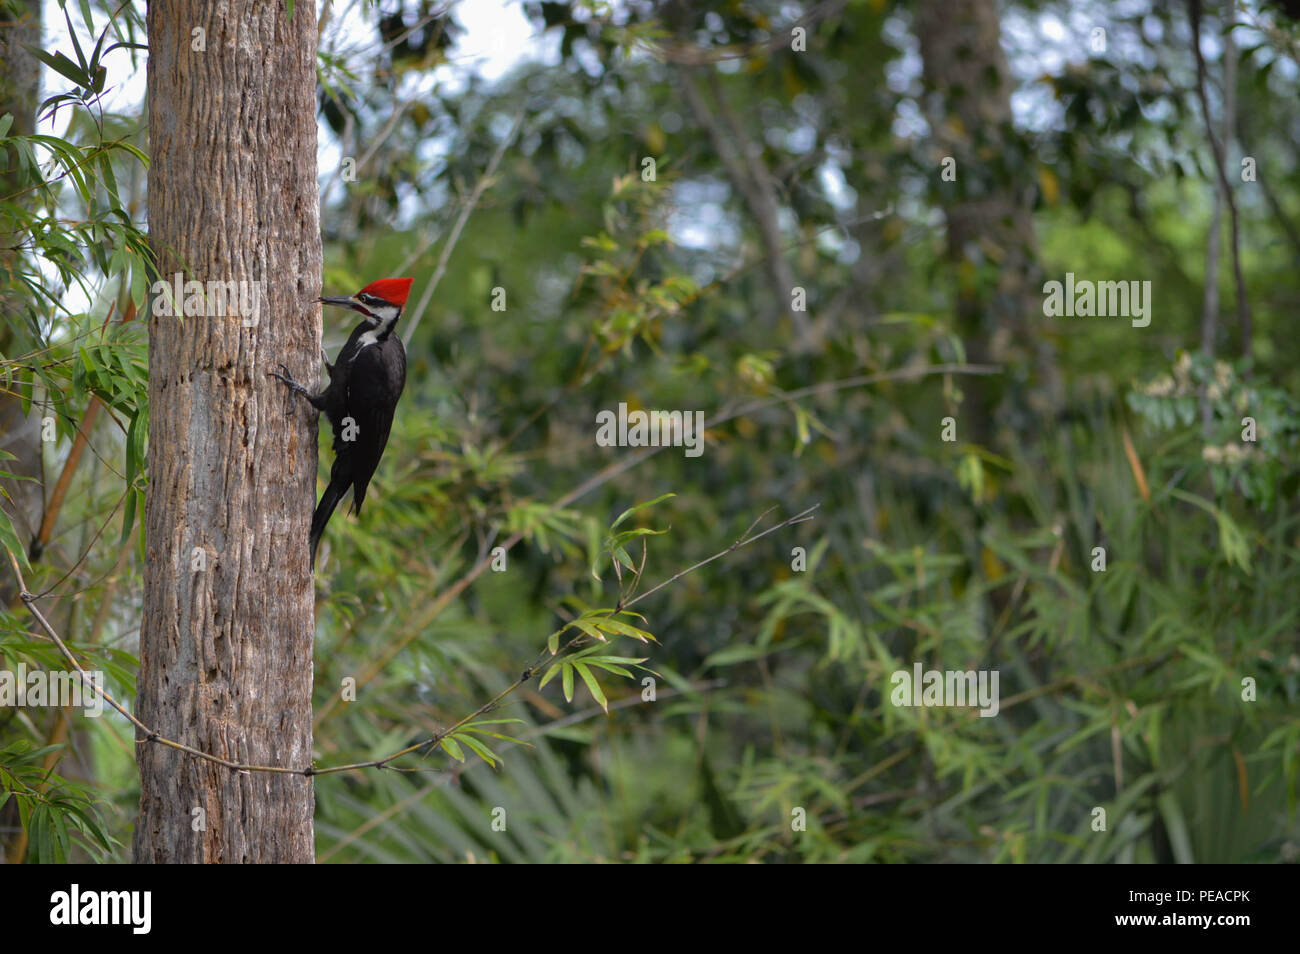 Hinterhof Birding Ornithologie Outdoor Florida Natur Wildlife Fotografie Seite Profil ansehen Pileated Woodpecker Größten Gemeinsamen Specht Nordamerika Stockfoto